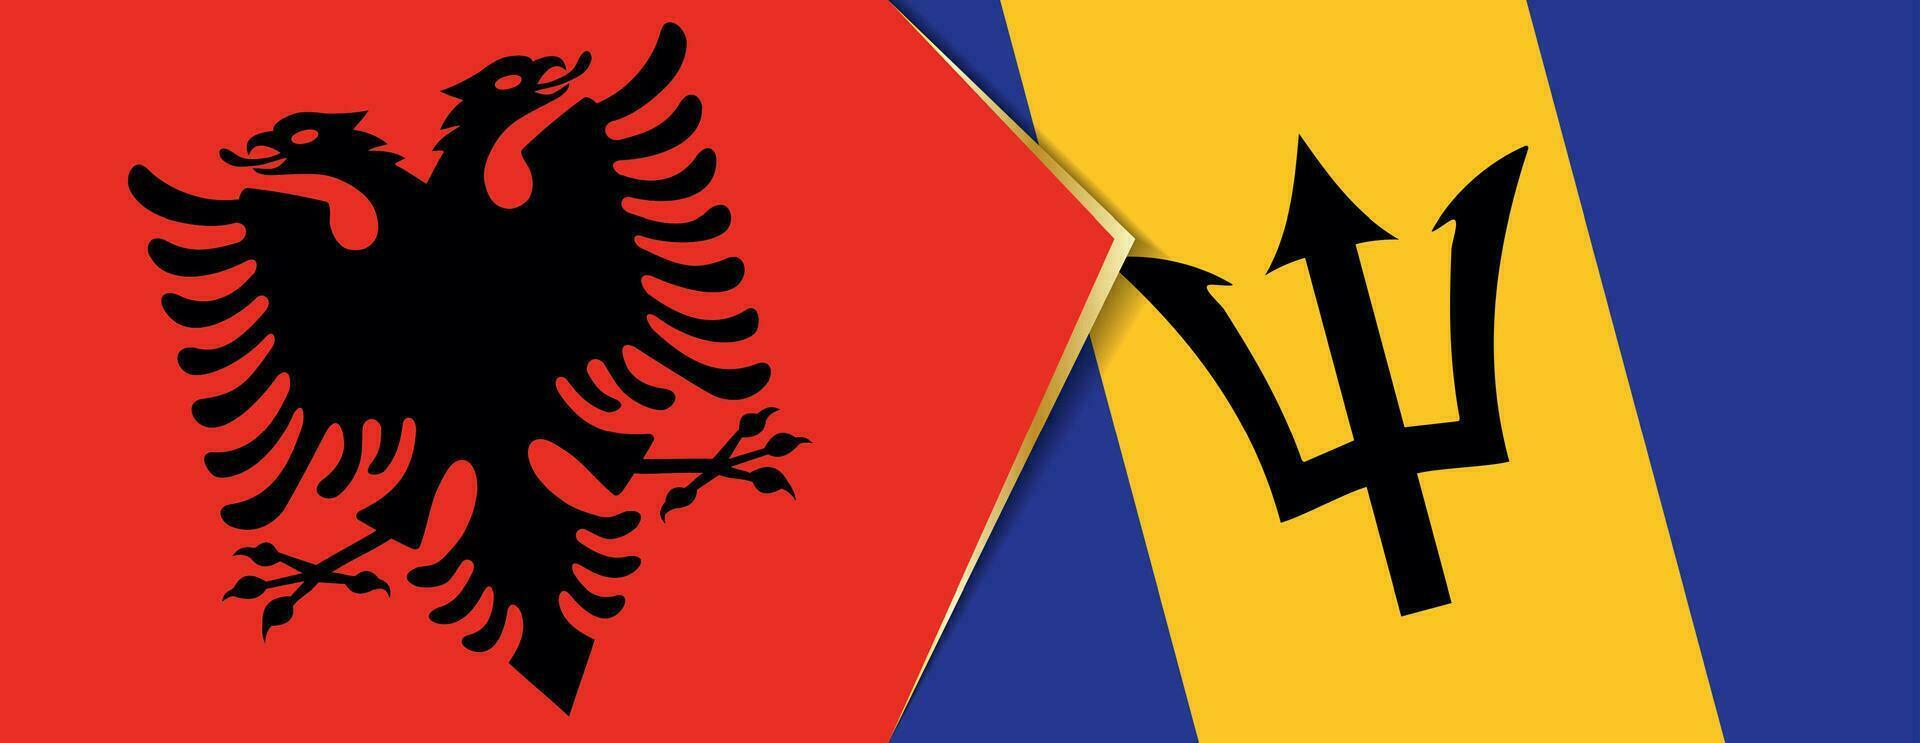 albania och barbados flaggor, två vektor flaggor.